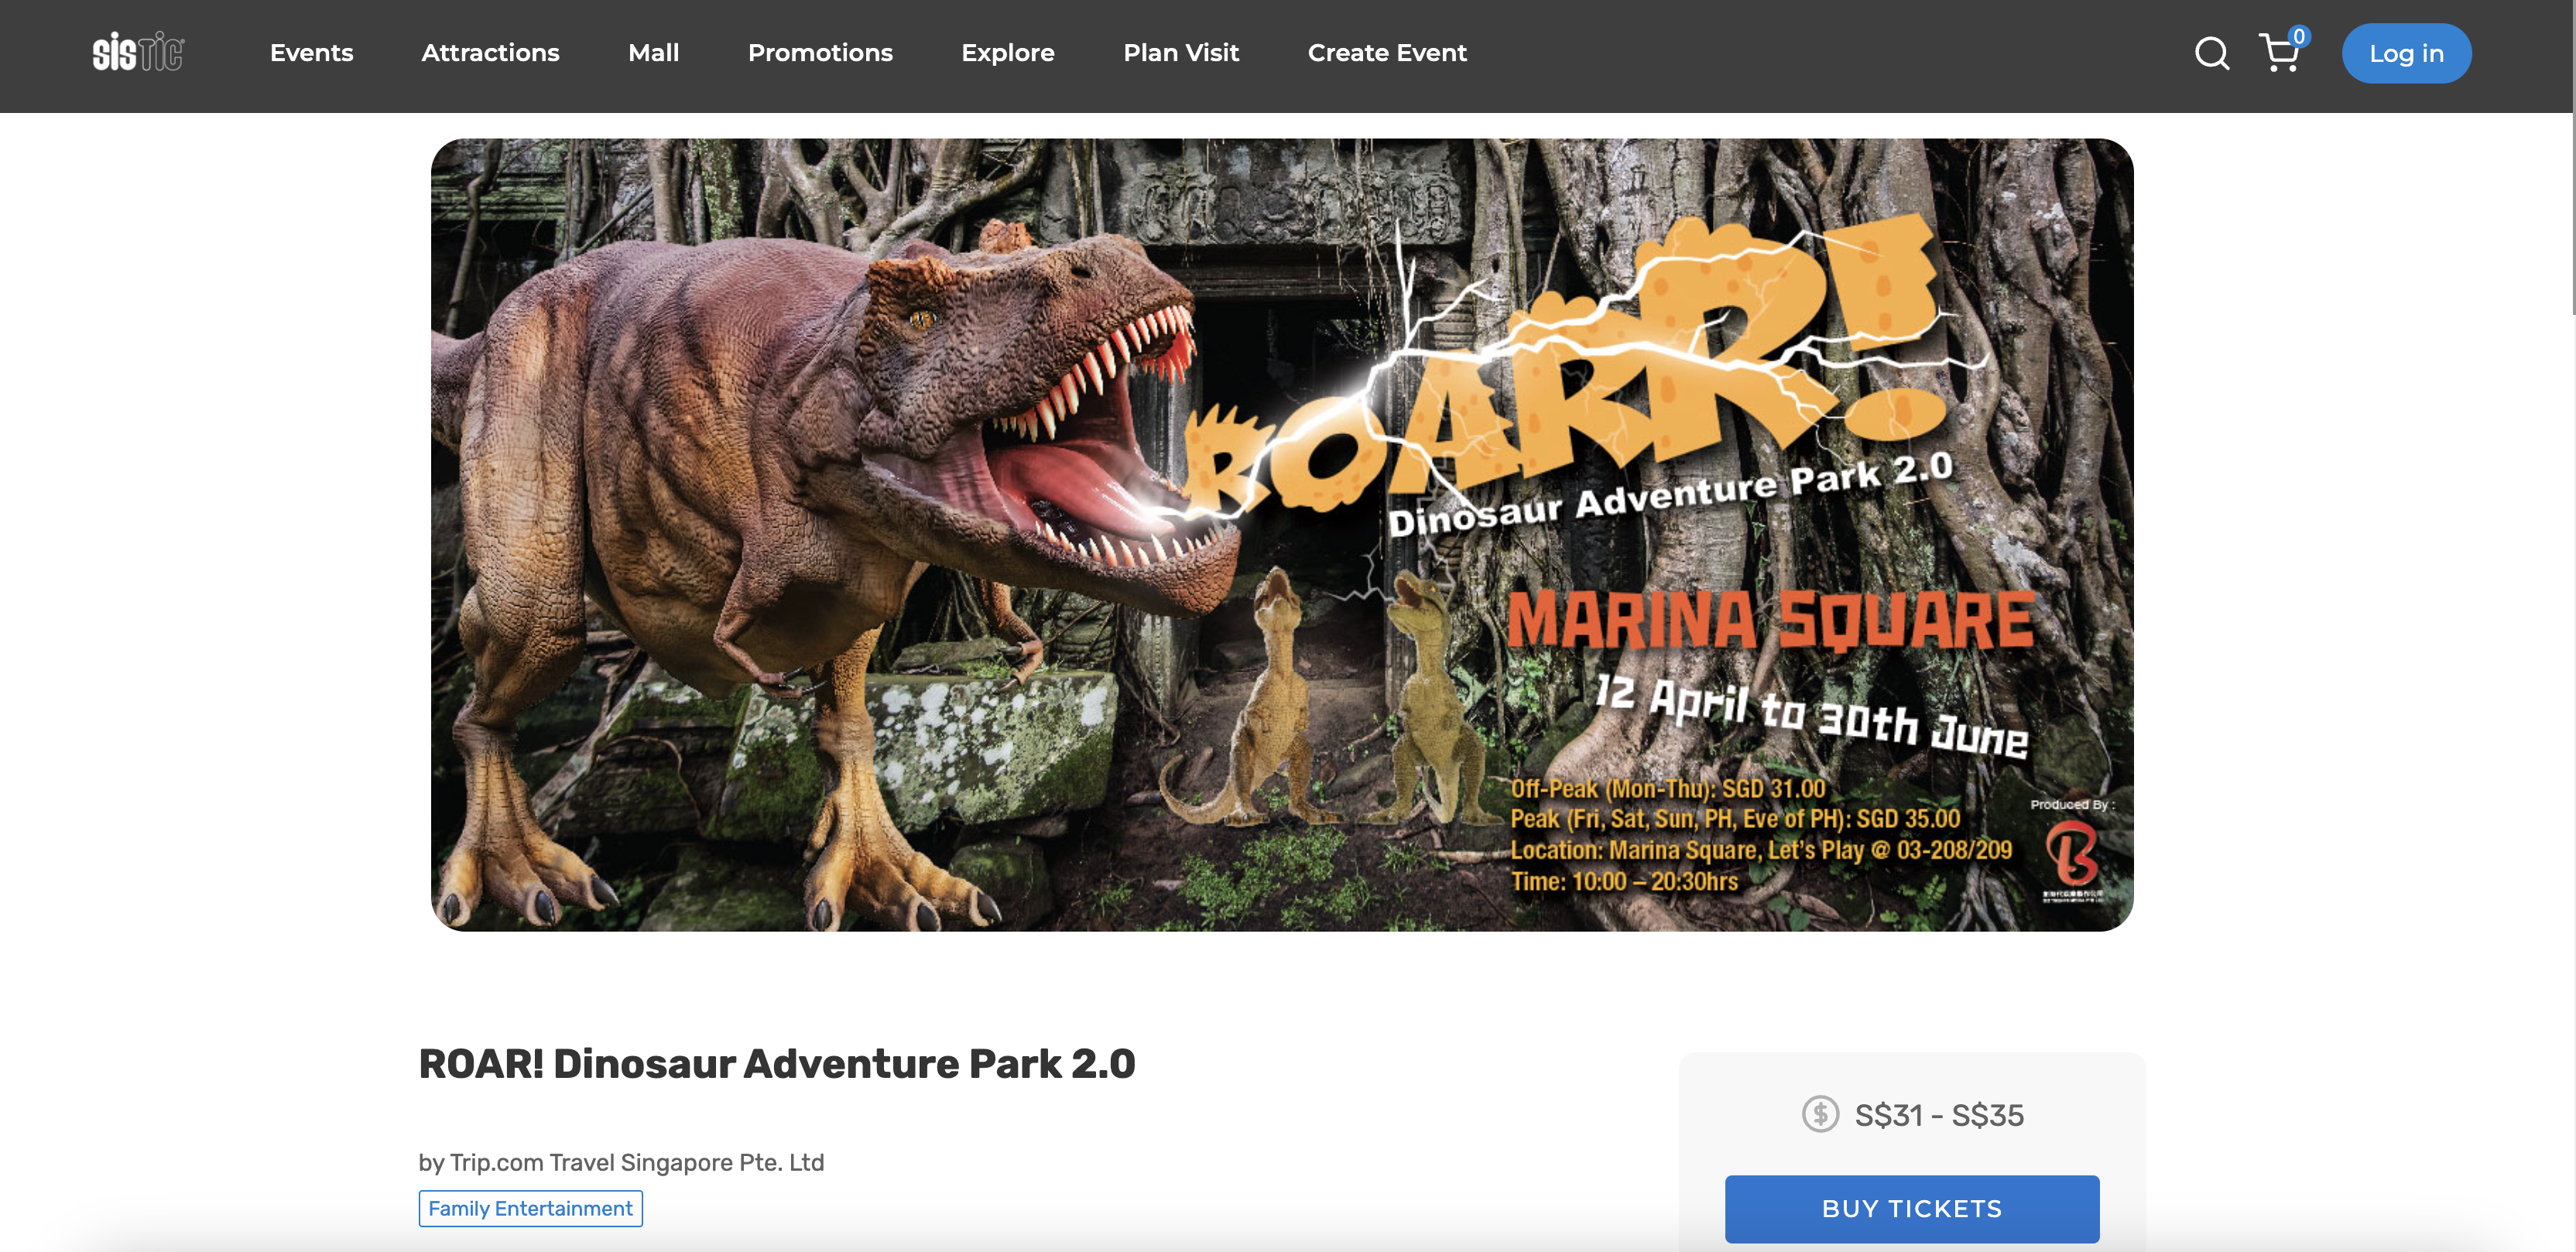 ROAR! Dinosaur Adventure Park 2.0